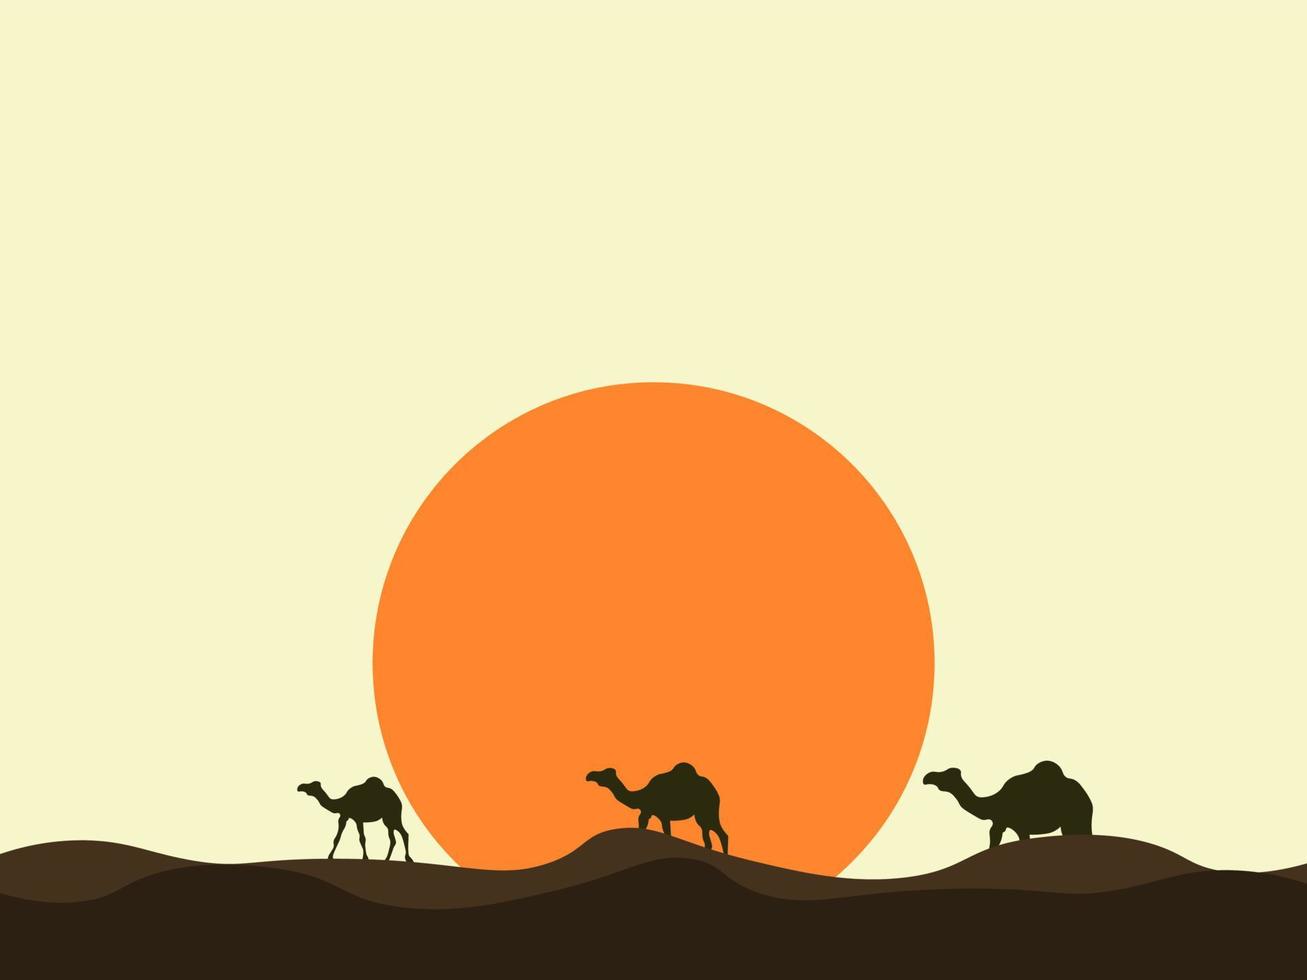 camelo no deserto, ilustração, vetor em fundo branco.